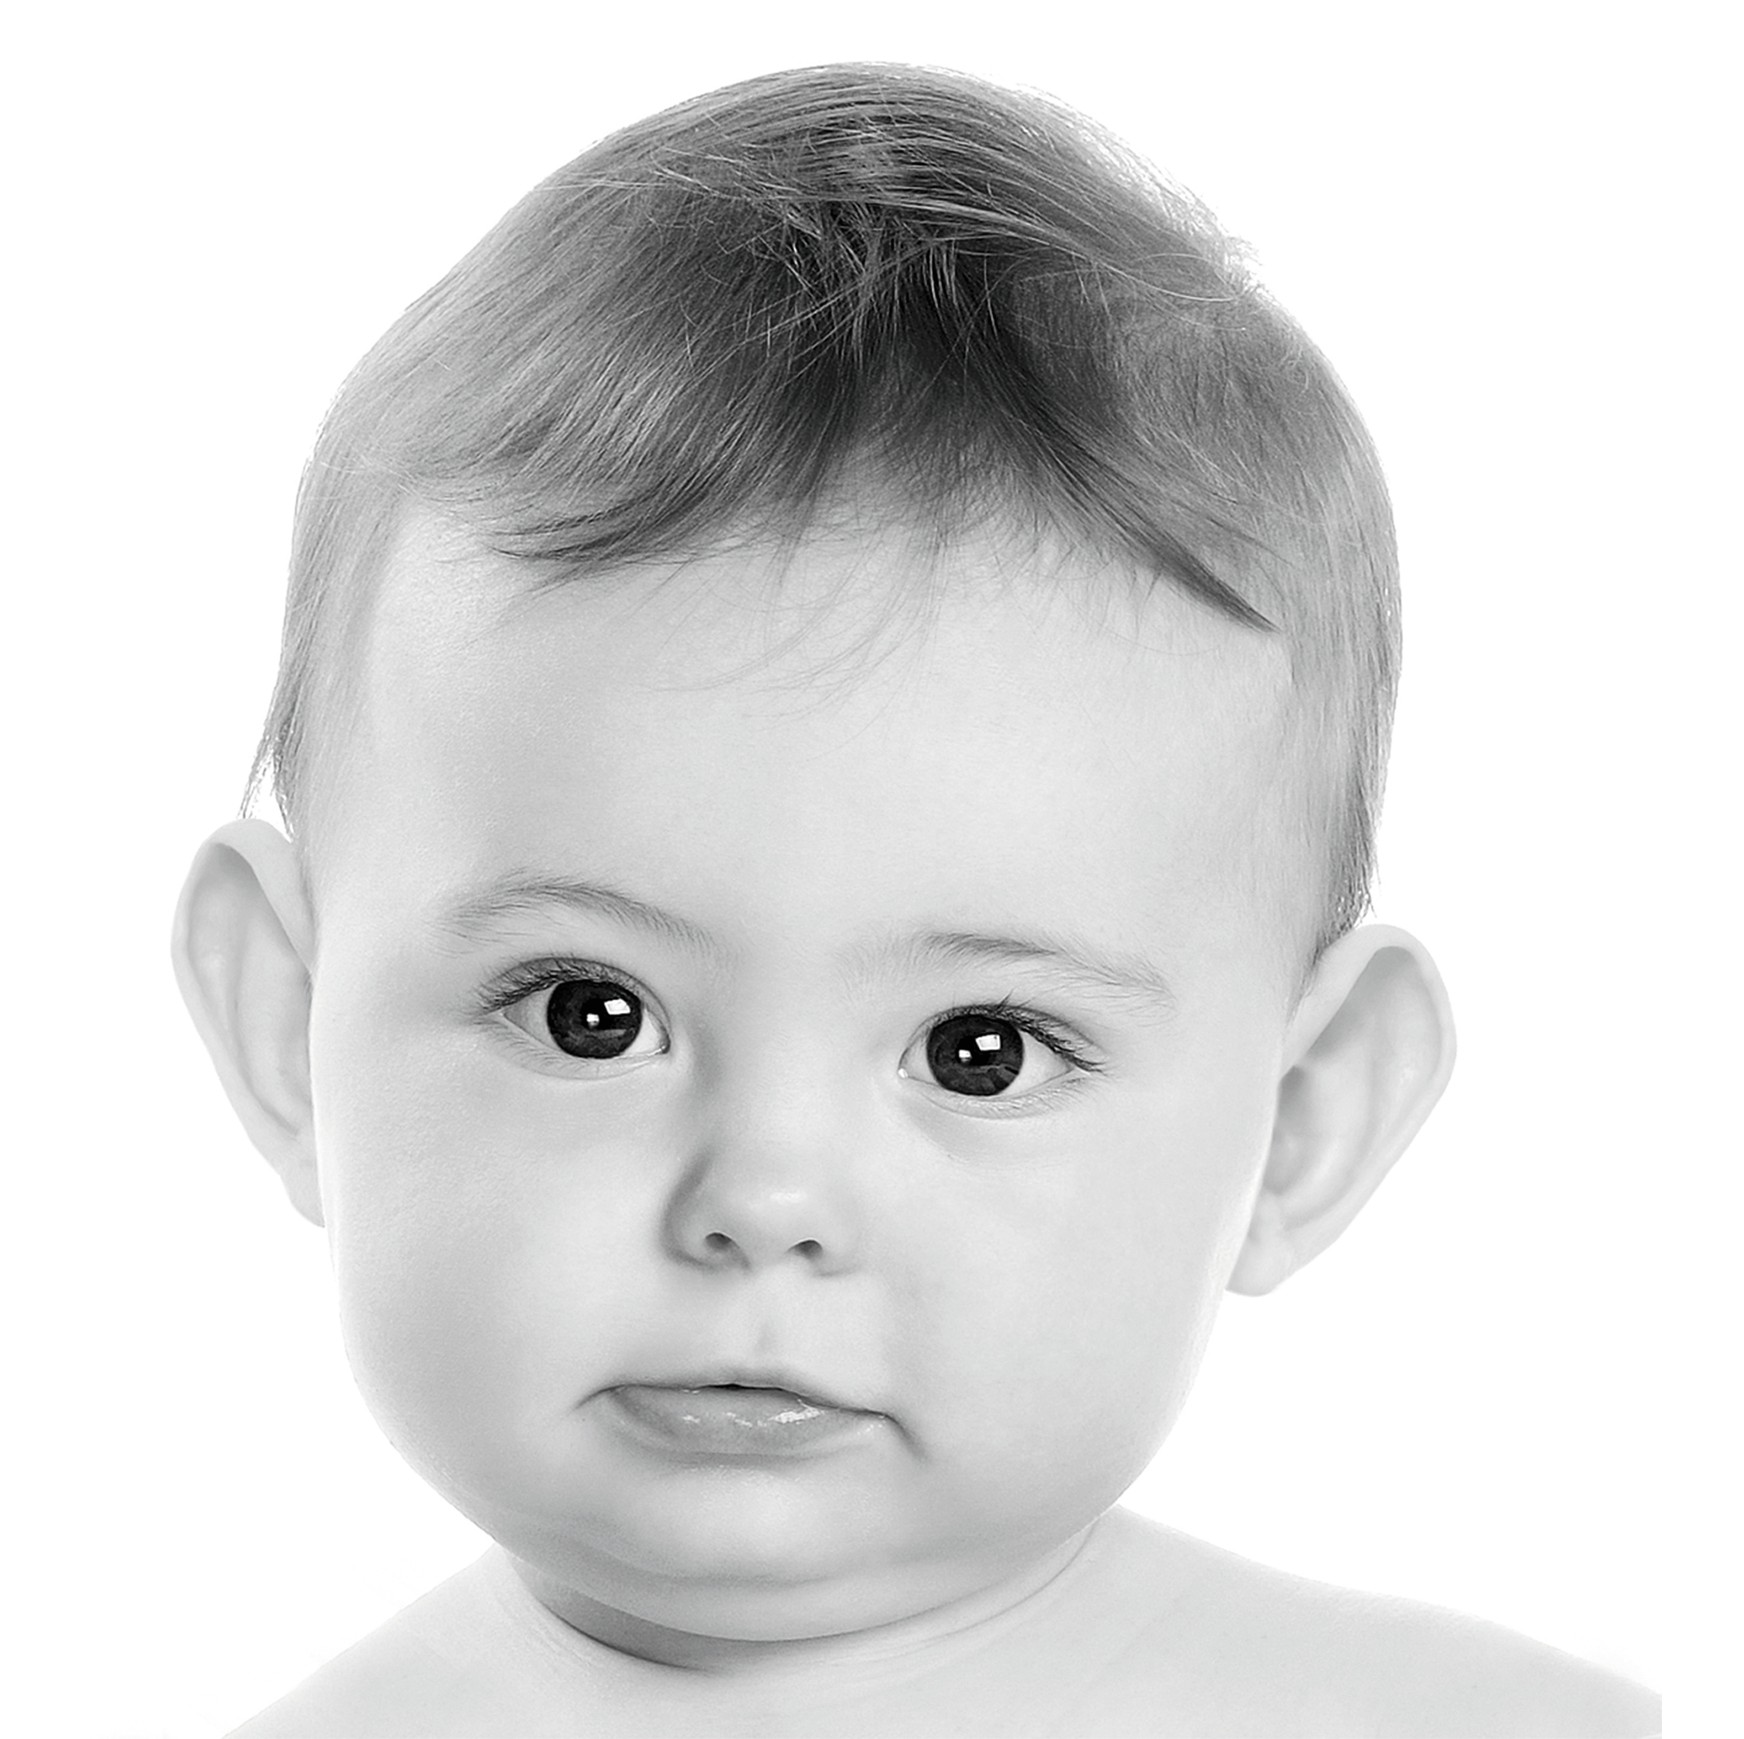 Otostick Baby Korektory Estetyczne Uszu Dla Dzieci 7077200375 Allegro Pl